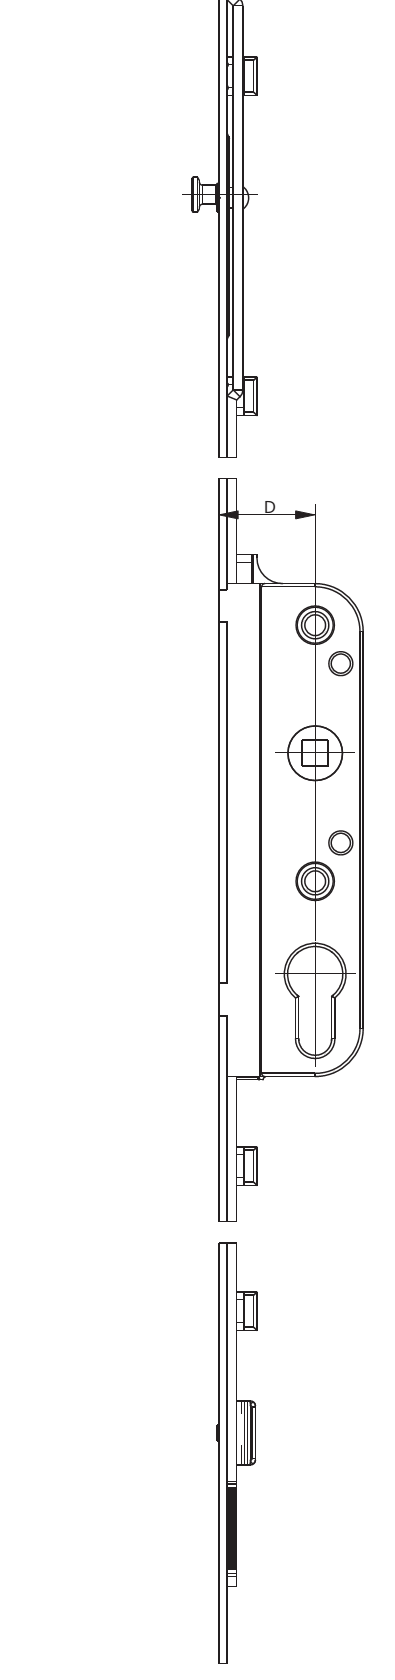 GU-ITALIA -  Cremonese GU-966 per complanare parallelo altezza maniglia fissa con foro cilindro - entrata 30 - alt. man. 980 - lbb/hbb 1621-1870